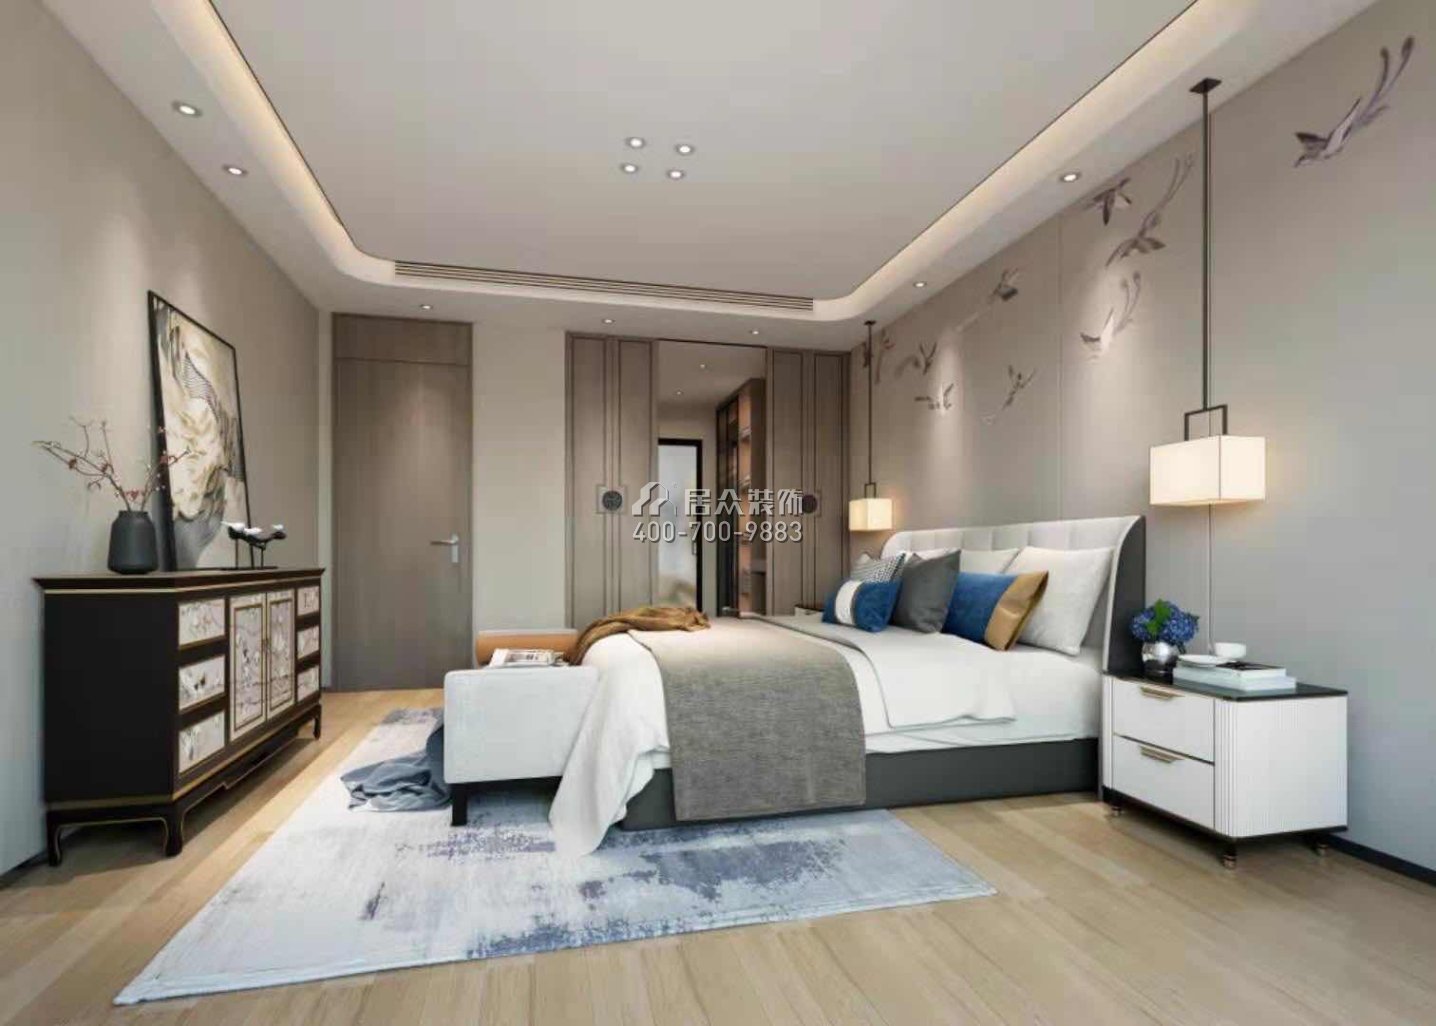 翠沁阁149平方米中式风格平层户型卧室装修效果图